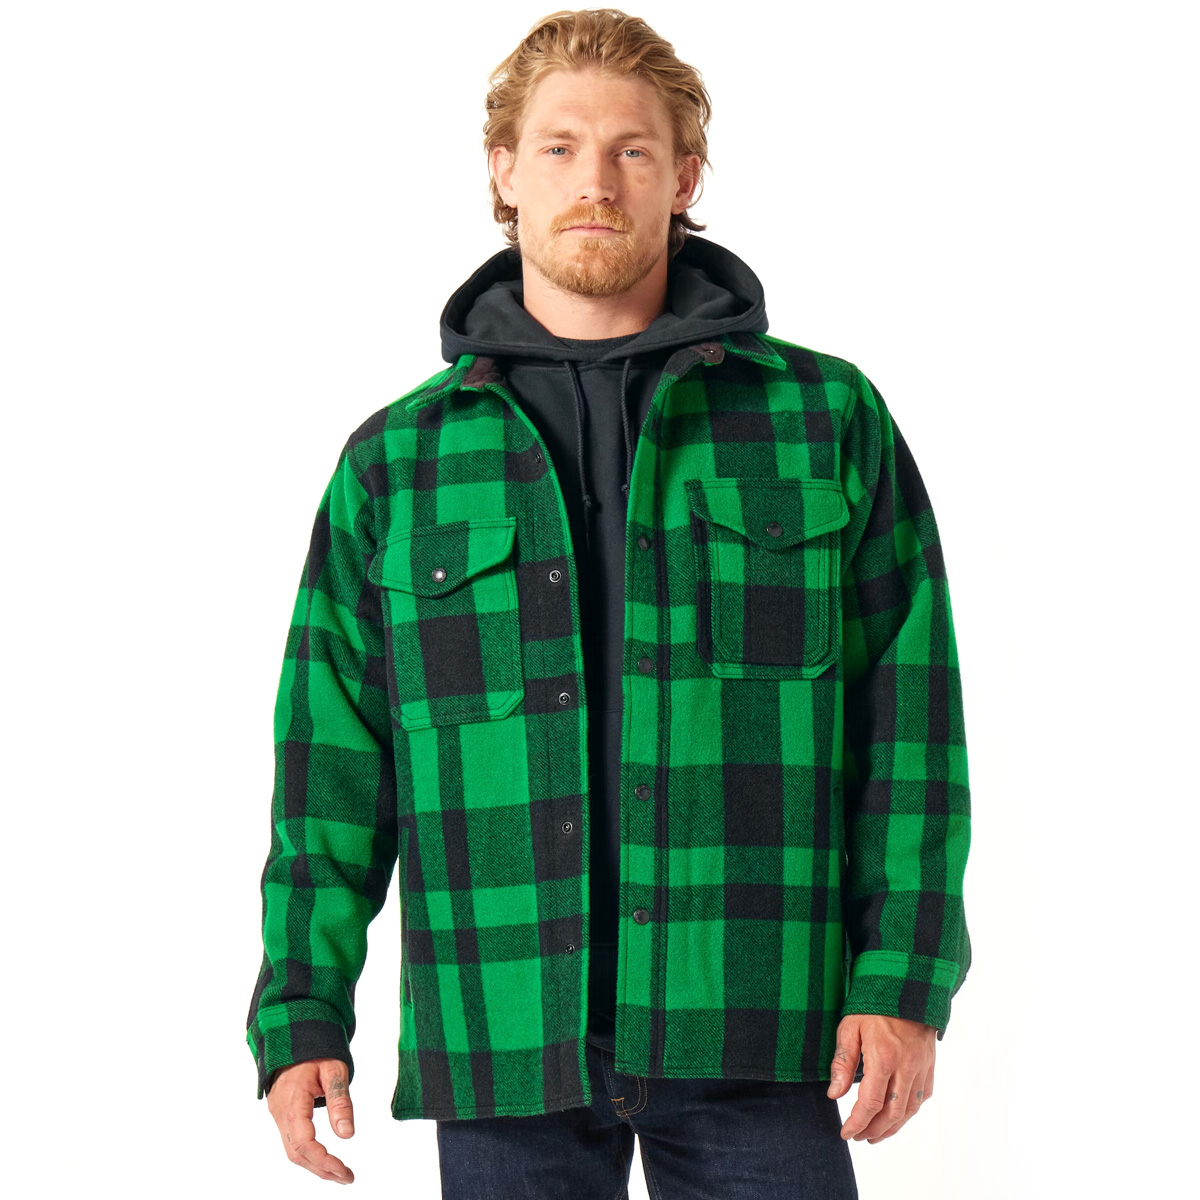 Filson Mackinaw Wool Jac Shirt Acid Green/Black Heritage Plaid, voor comfort, natuurlijke waterafstotendheid en isolerende warmte in alle weersomstandigheden